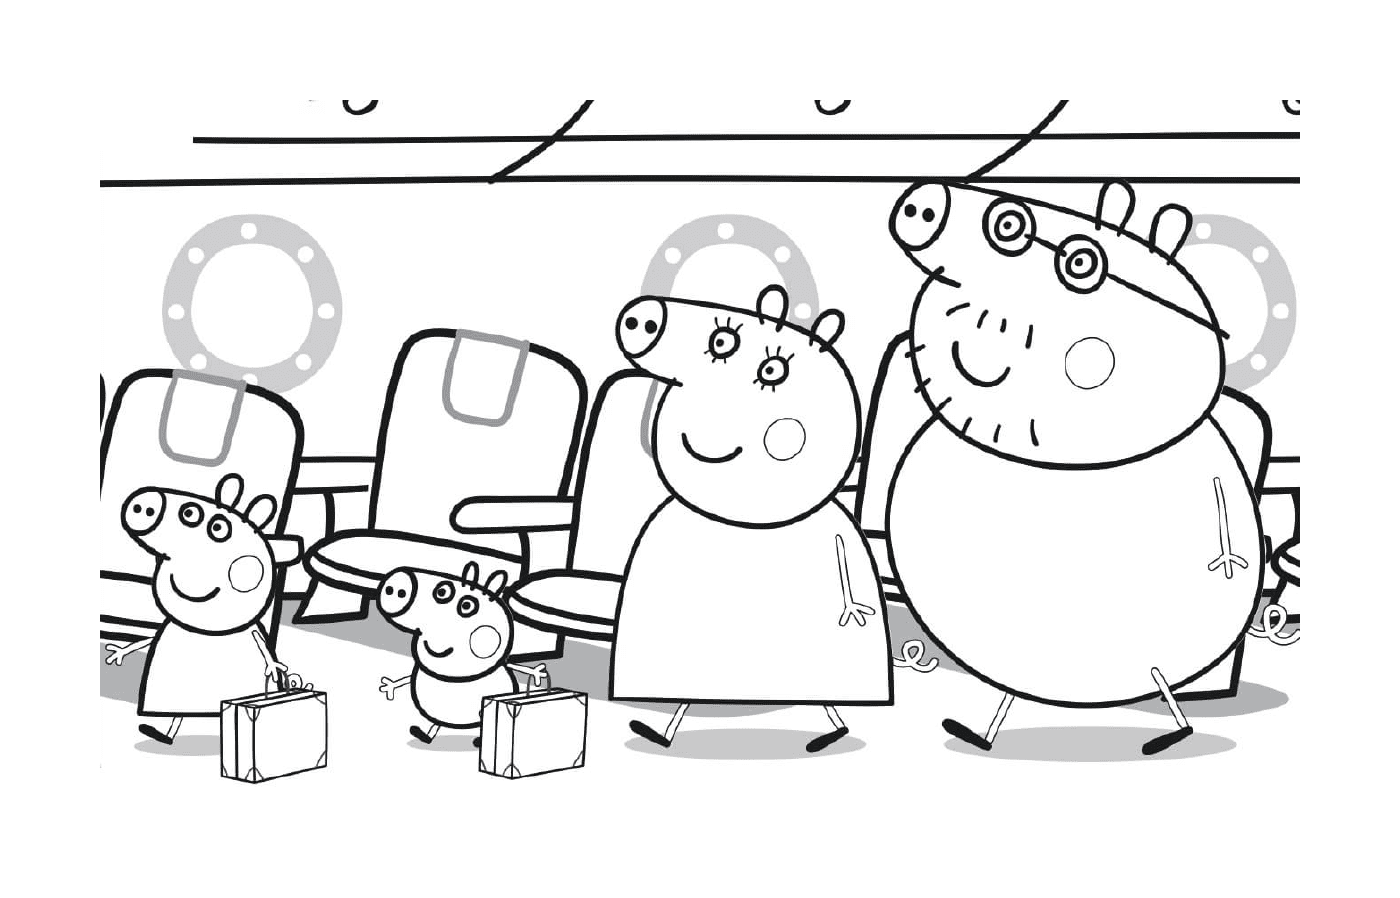  पेप्पो सूअर और उसका परिवार विमान पर अपनी सीटों के लिए रवाना हुए 